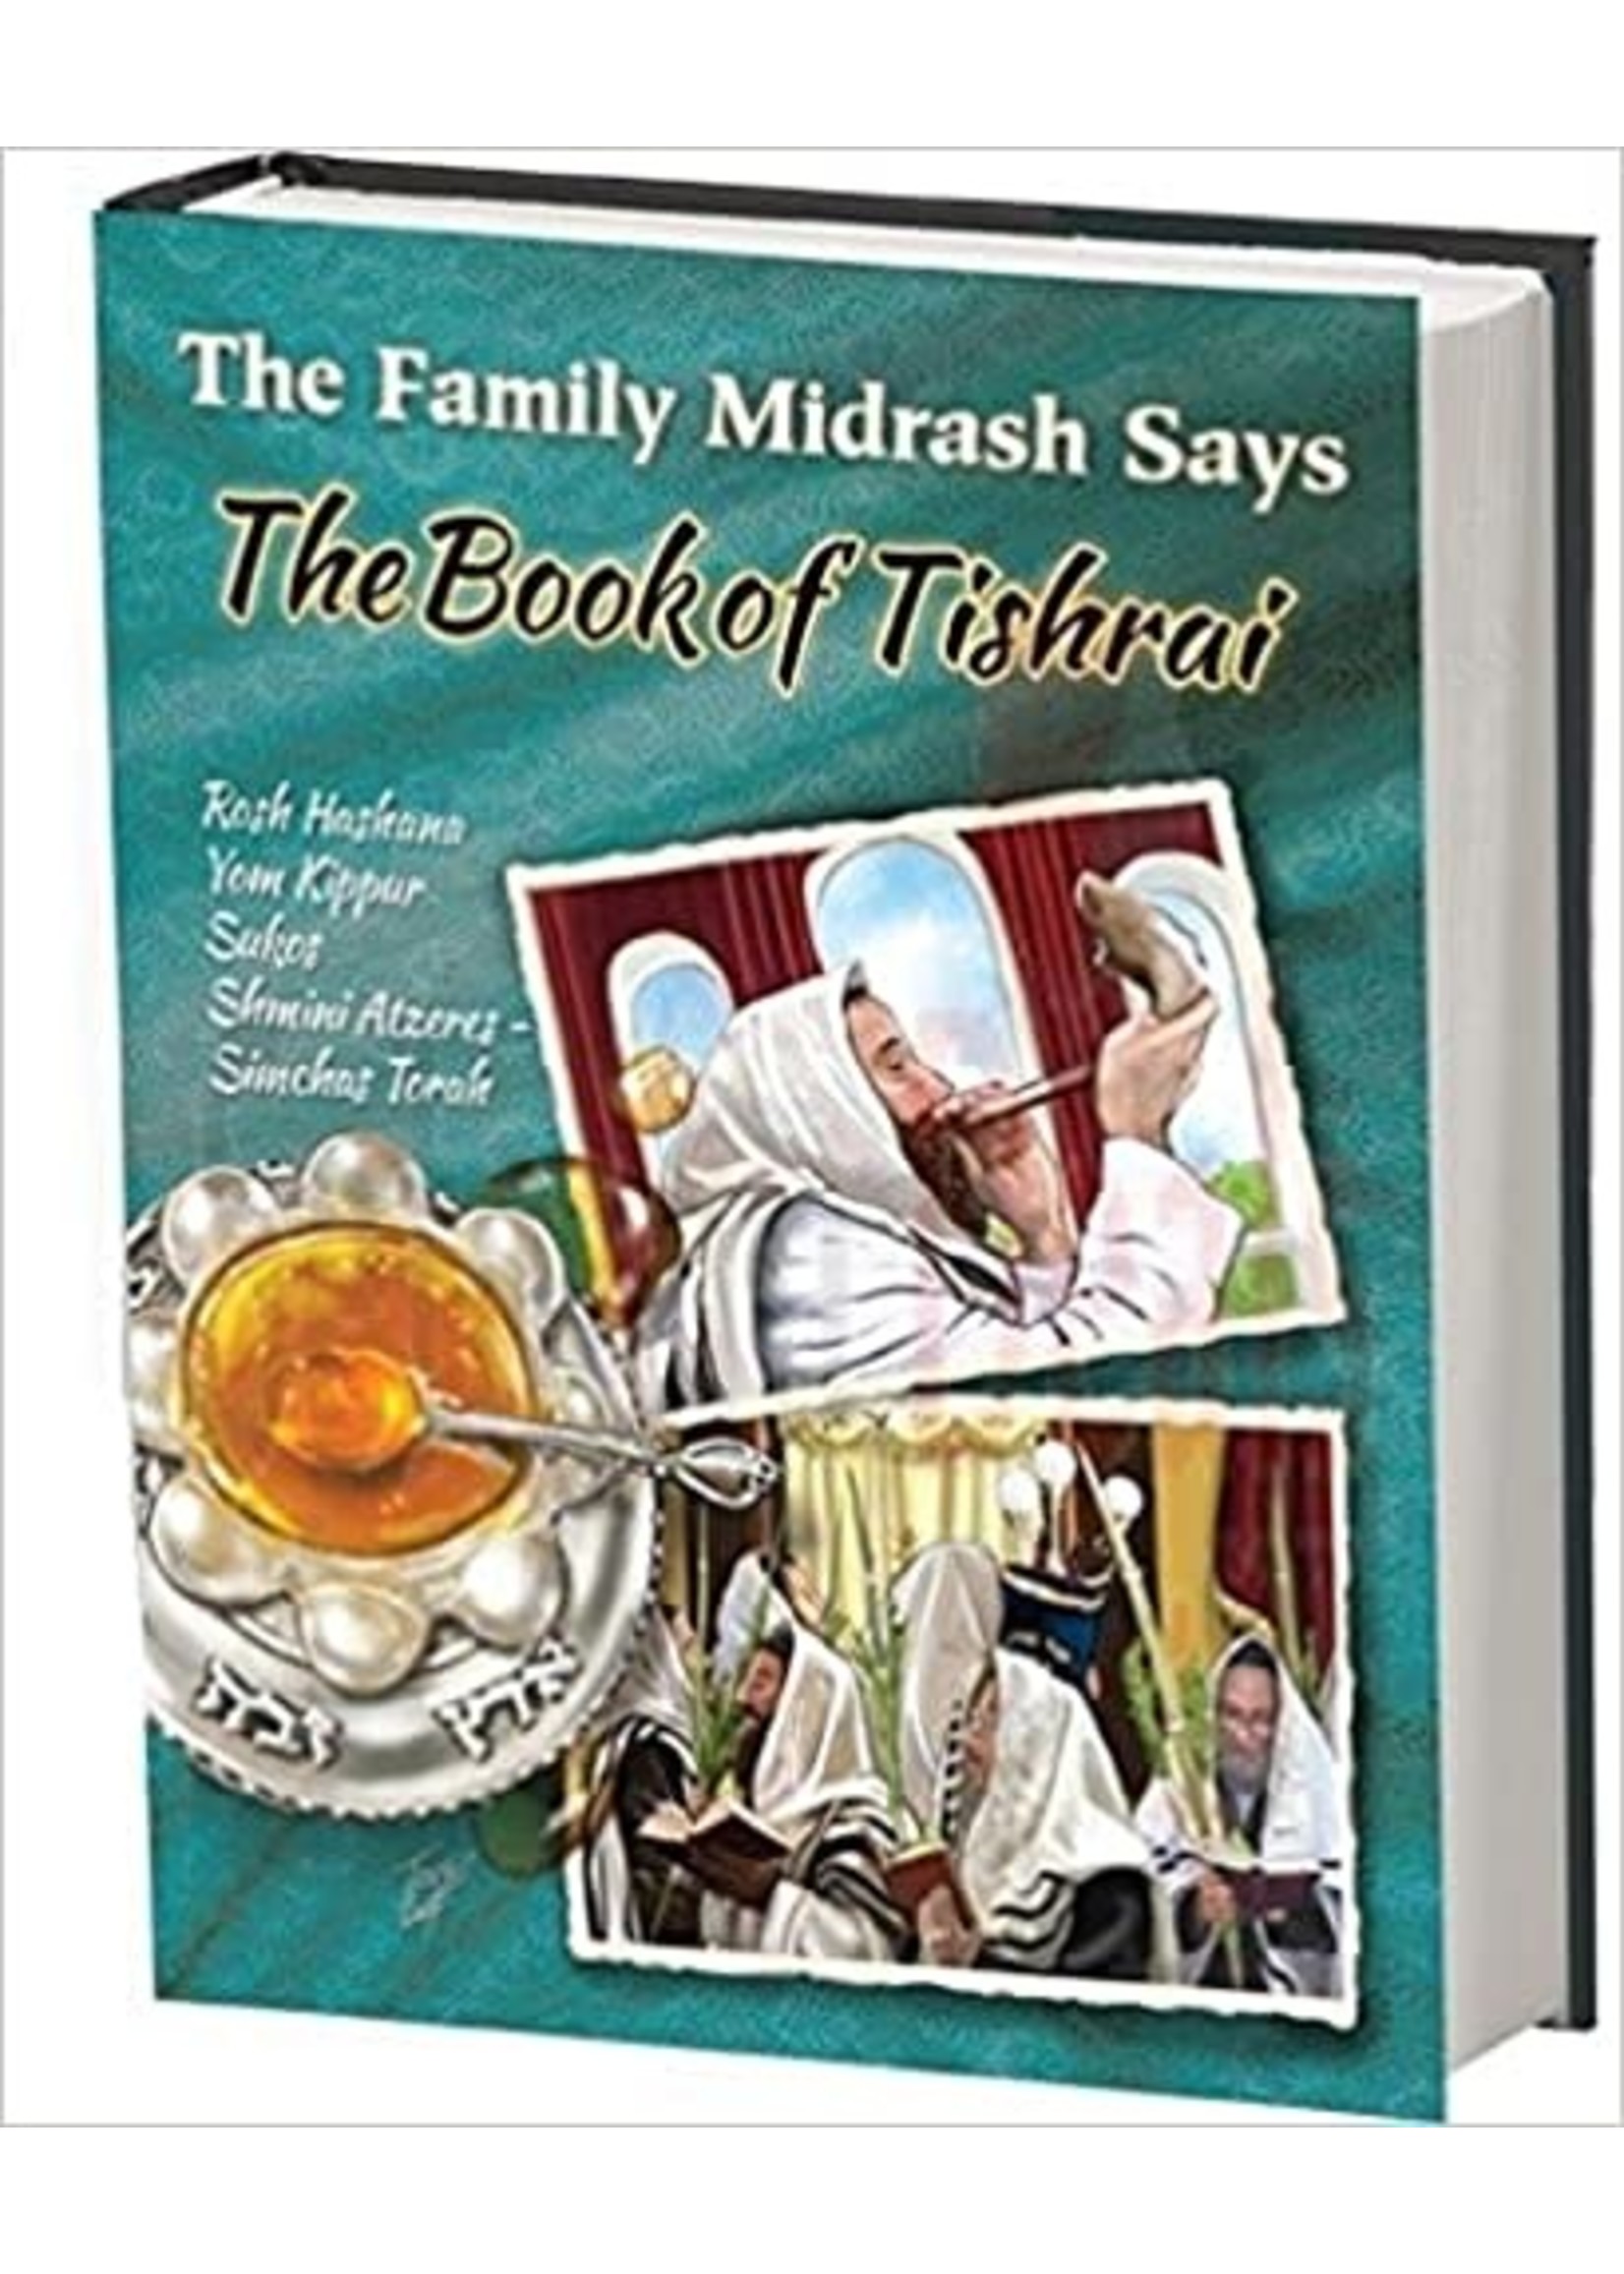 THE BOOK OF TISHRAI